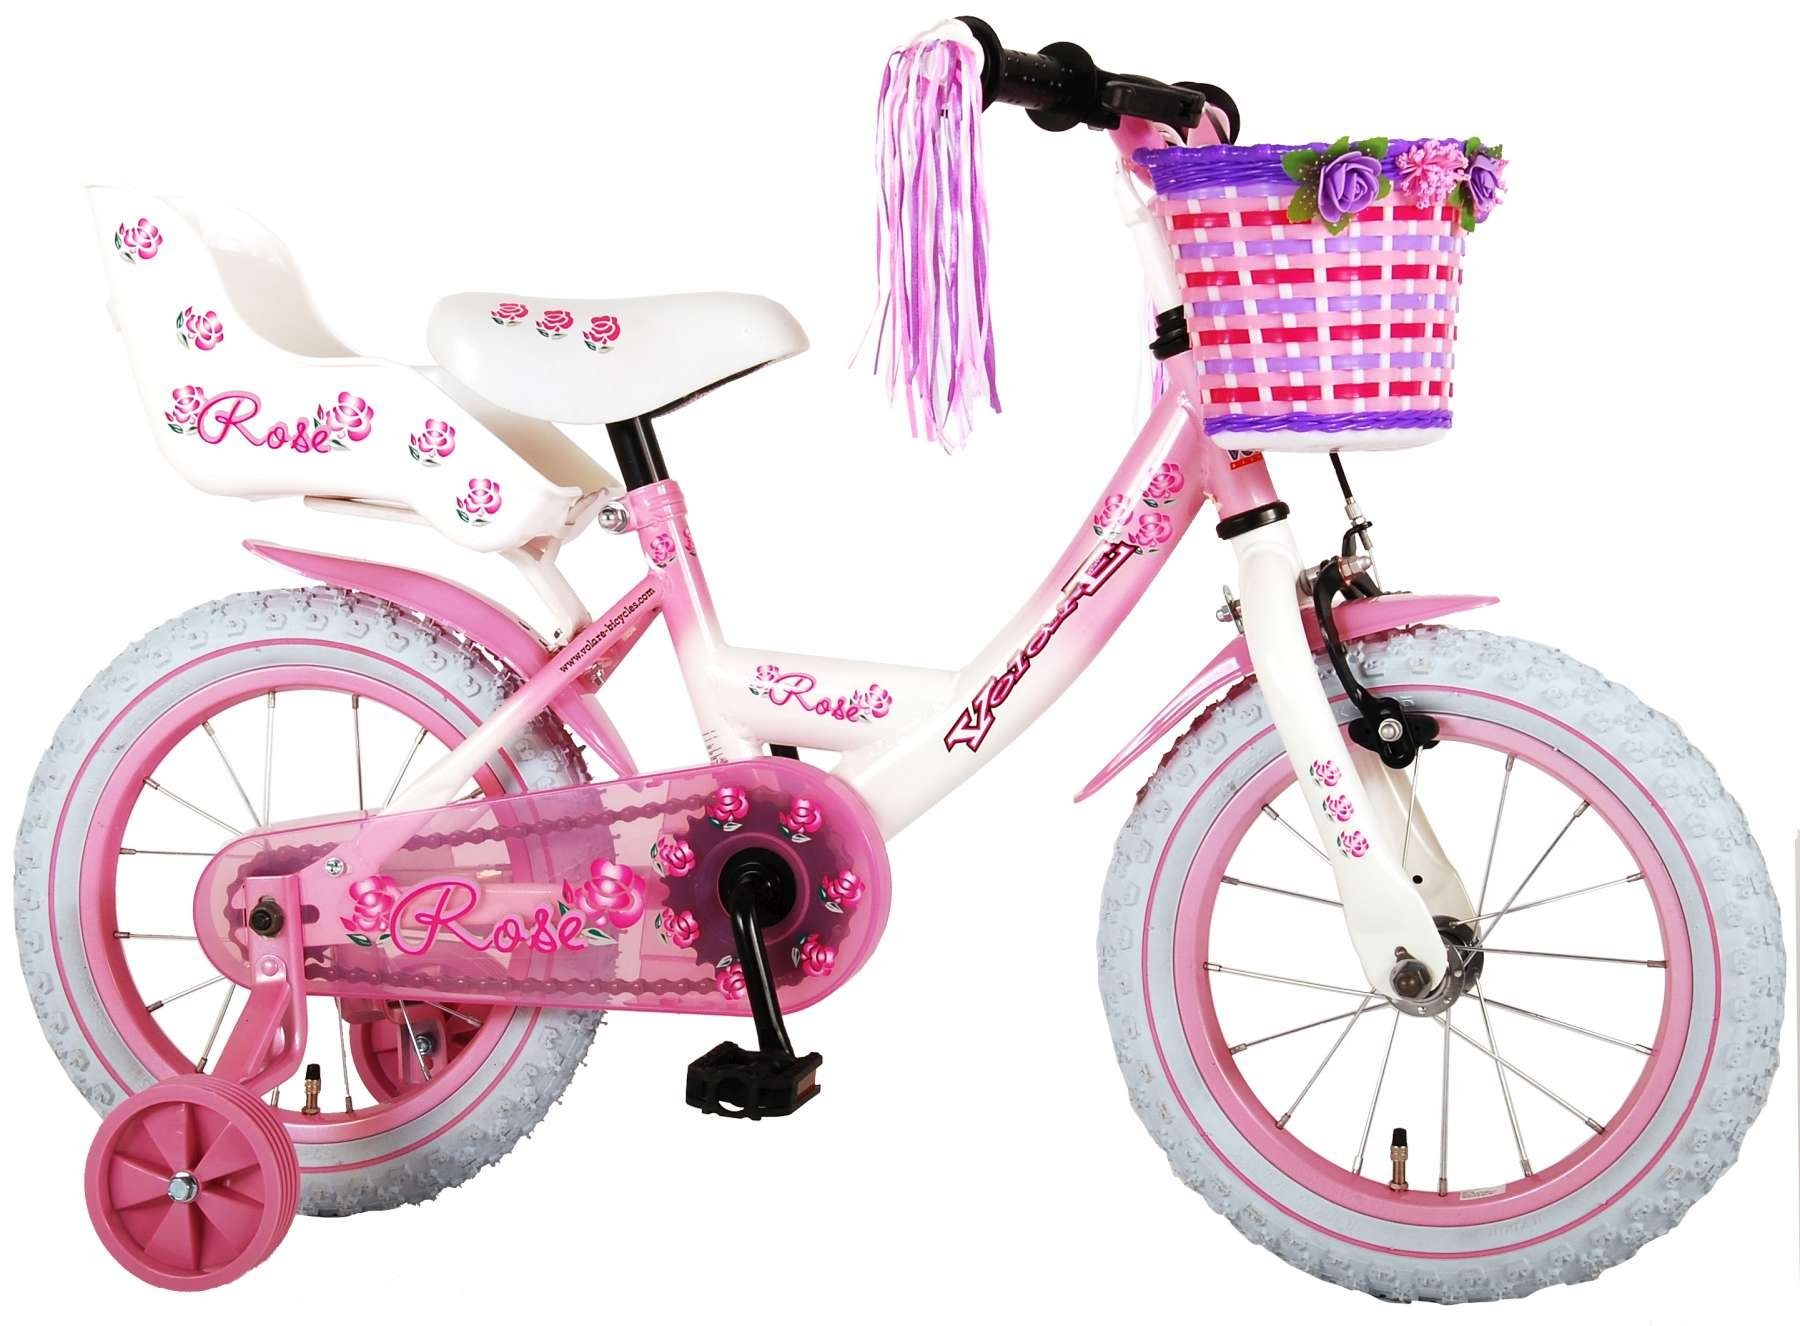 Volare Kinderfahrrad Rose, Mädchen - Pink - verschiedene Größen - 95% zusammengebaut, 1 Gang, bis 60 kg, Rücktrittbremse, Luftbereifung, einstellbare Lenkerhöhe